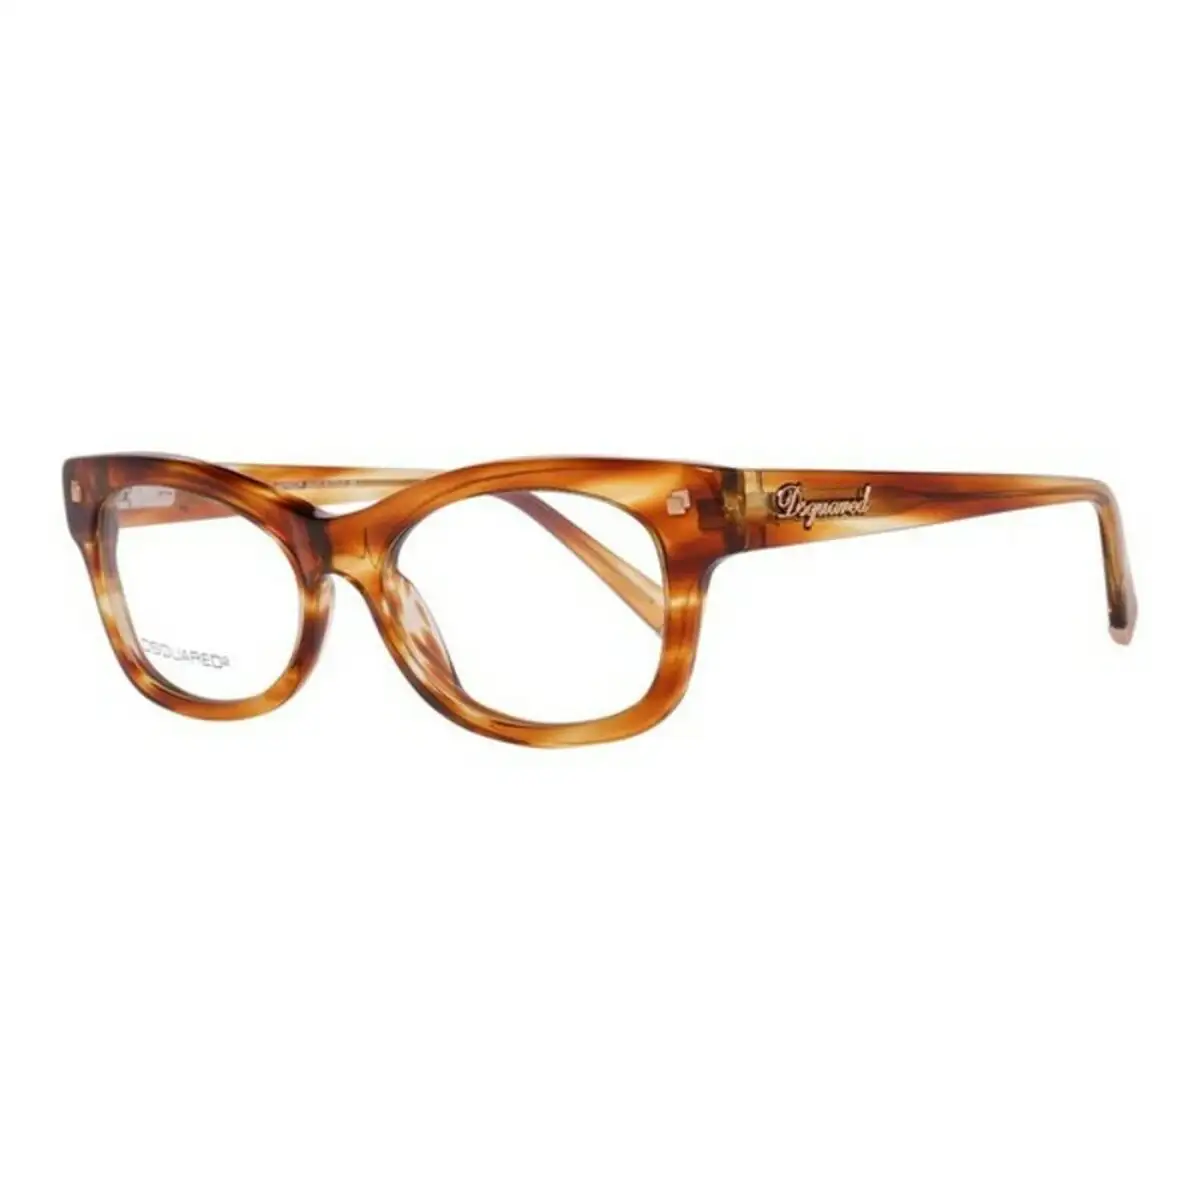 Monture de lunettes femme dsquared2 dq5085 047 o 52 mm marron o 52 mm _7042. DIAYTAR SENEGAL - L'Art de Choisir, l'Art de Vivre. Parcourez notre boutique en ligne et découvrez des produits qui transforment chaque choix en une expérience enrichissante.